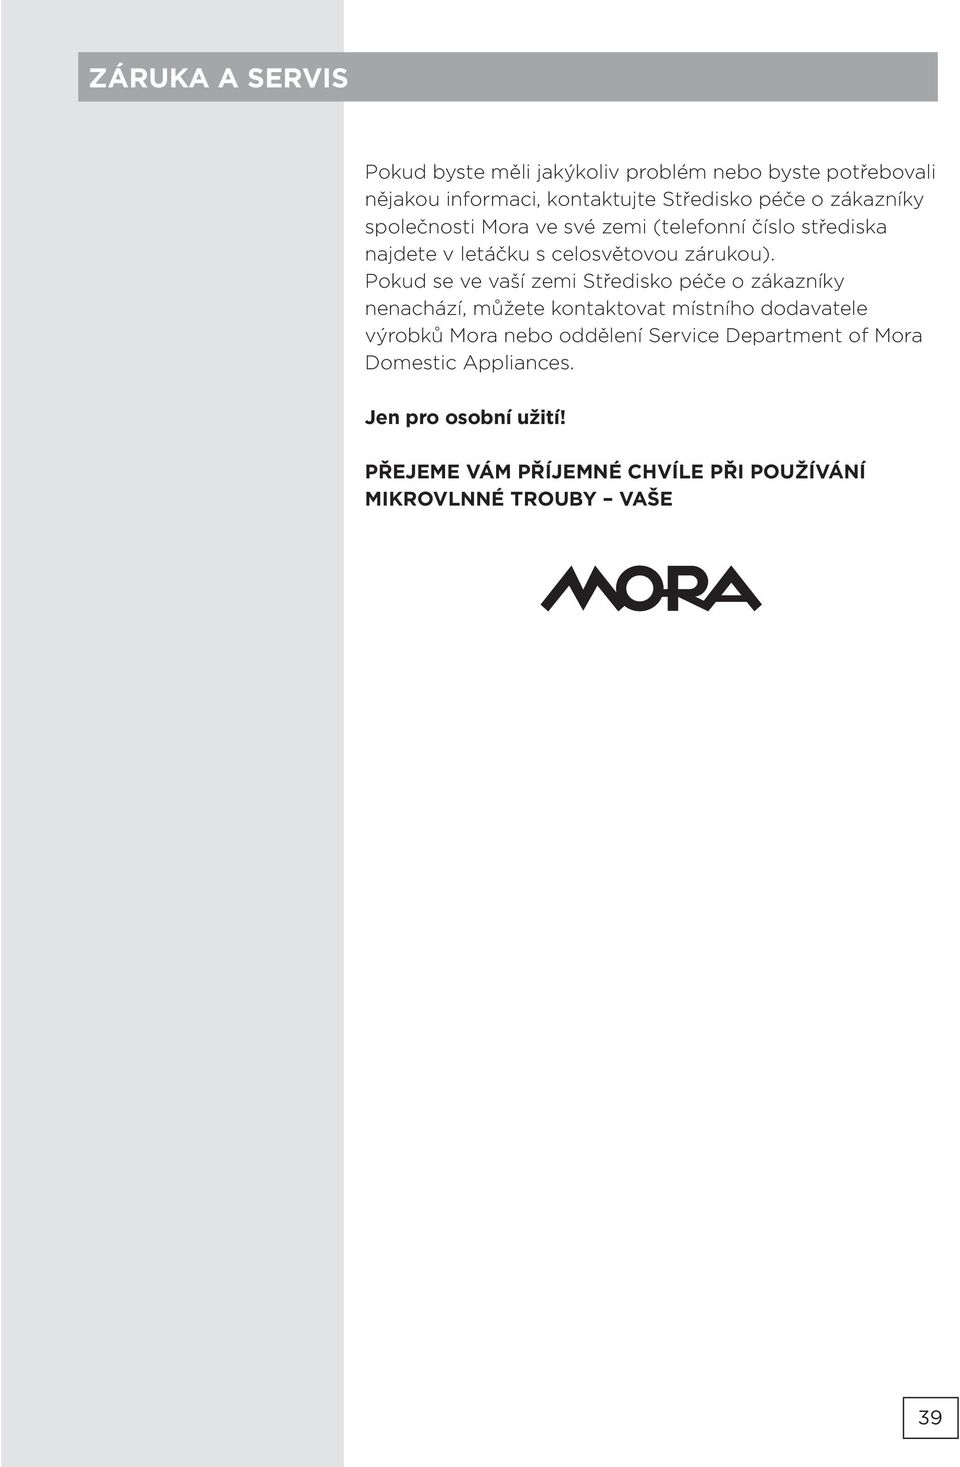 Pokud se ve vaší zemi Středisko péče o zákazníky nenachází, můžete kontaktovat místního dodavatele výrobků Mora nebo